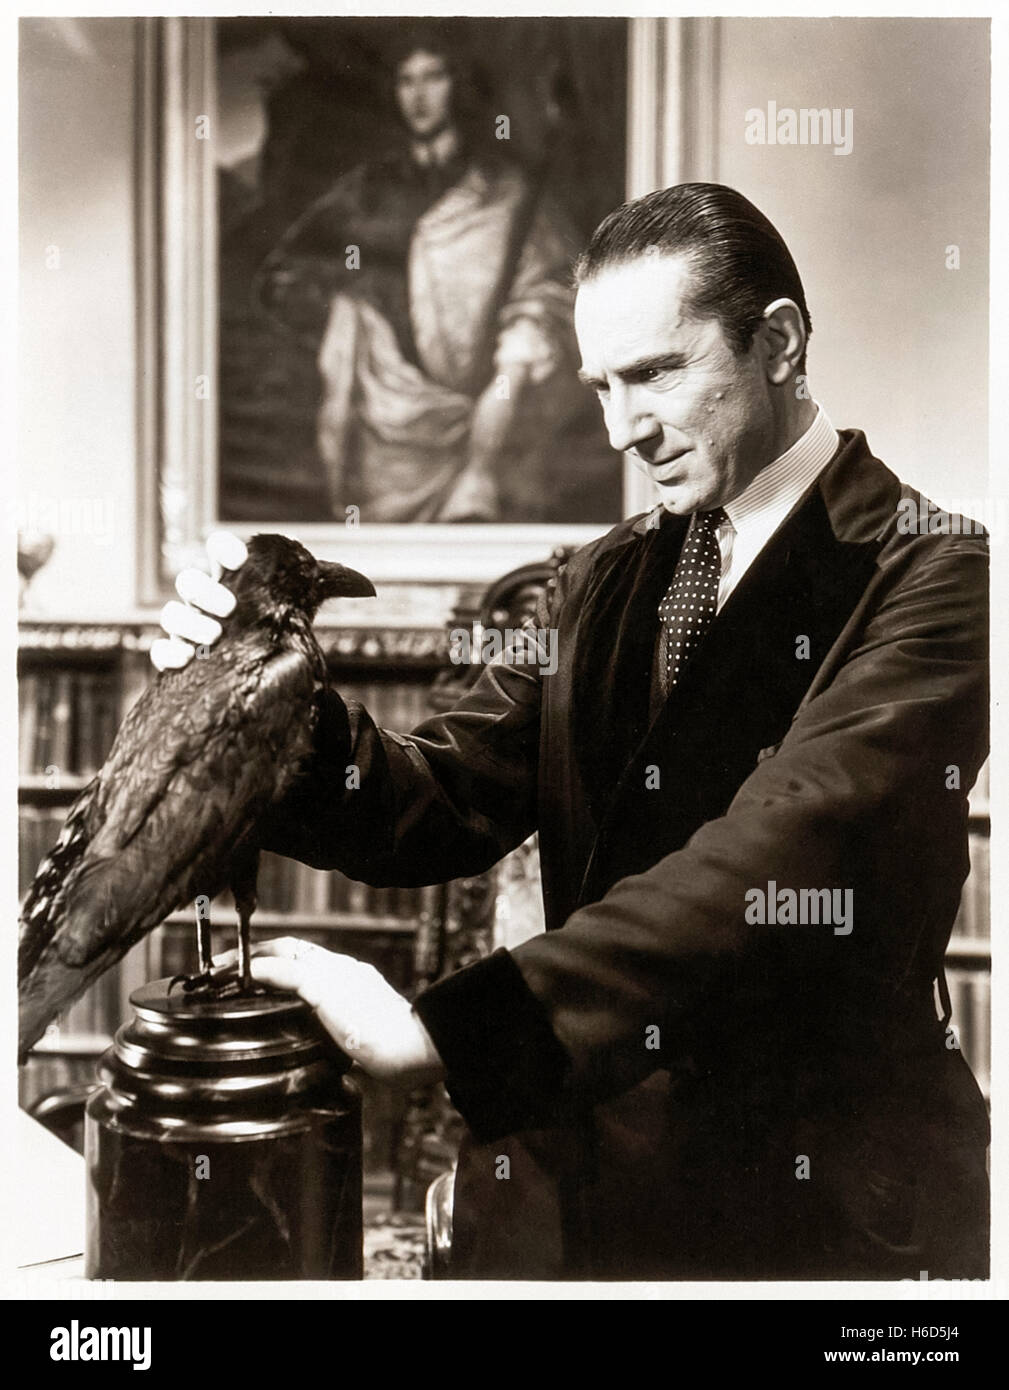 Dr. Richard Vollin, gespielt von Bela Lugosi (1882-1956) und seine geheimnisvolle Besucherin von "The Raven" (1935) unter der Regie von Lew Landers, eine lose Adaption des Gedichts von Poe (1809-1849). Siehe Beschreibung für mehr Informationen. Stockfoto